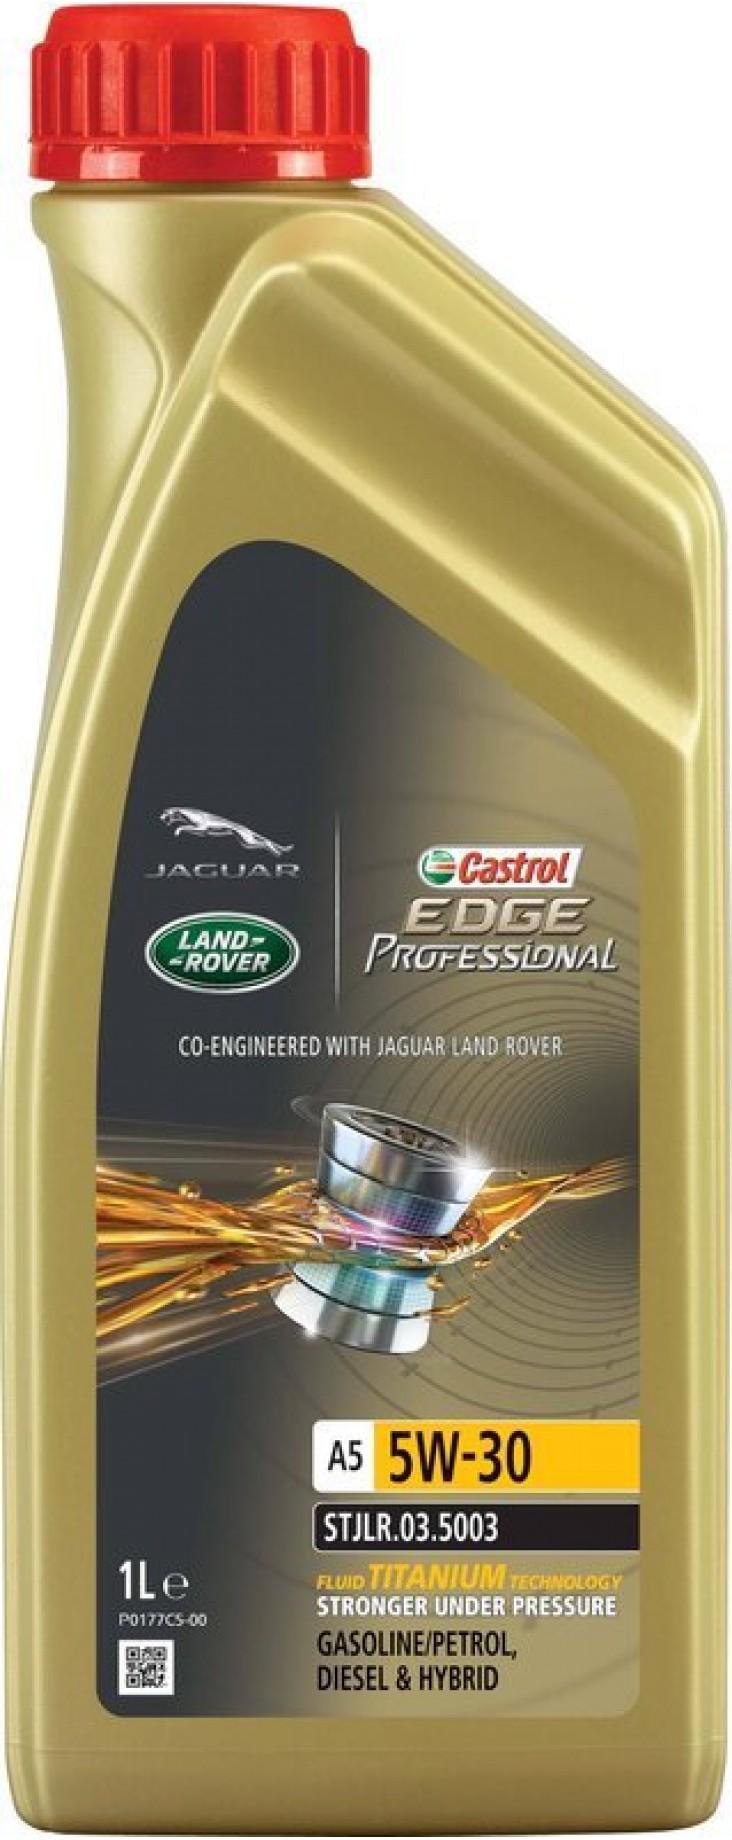 Buy Castrol engine oil Edge Professional A5 5W-30 on ADAM UA